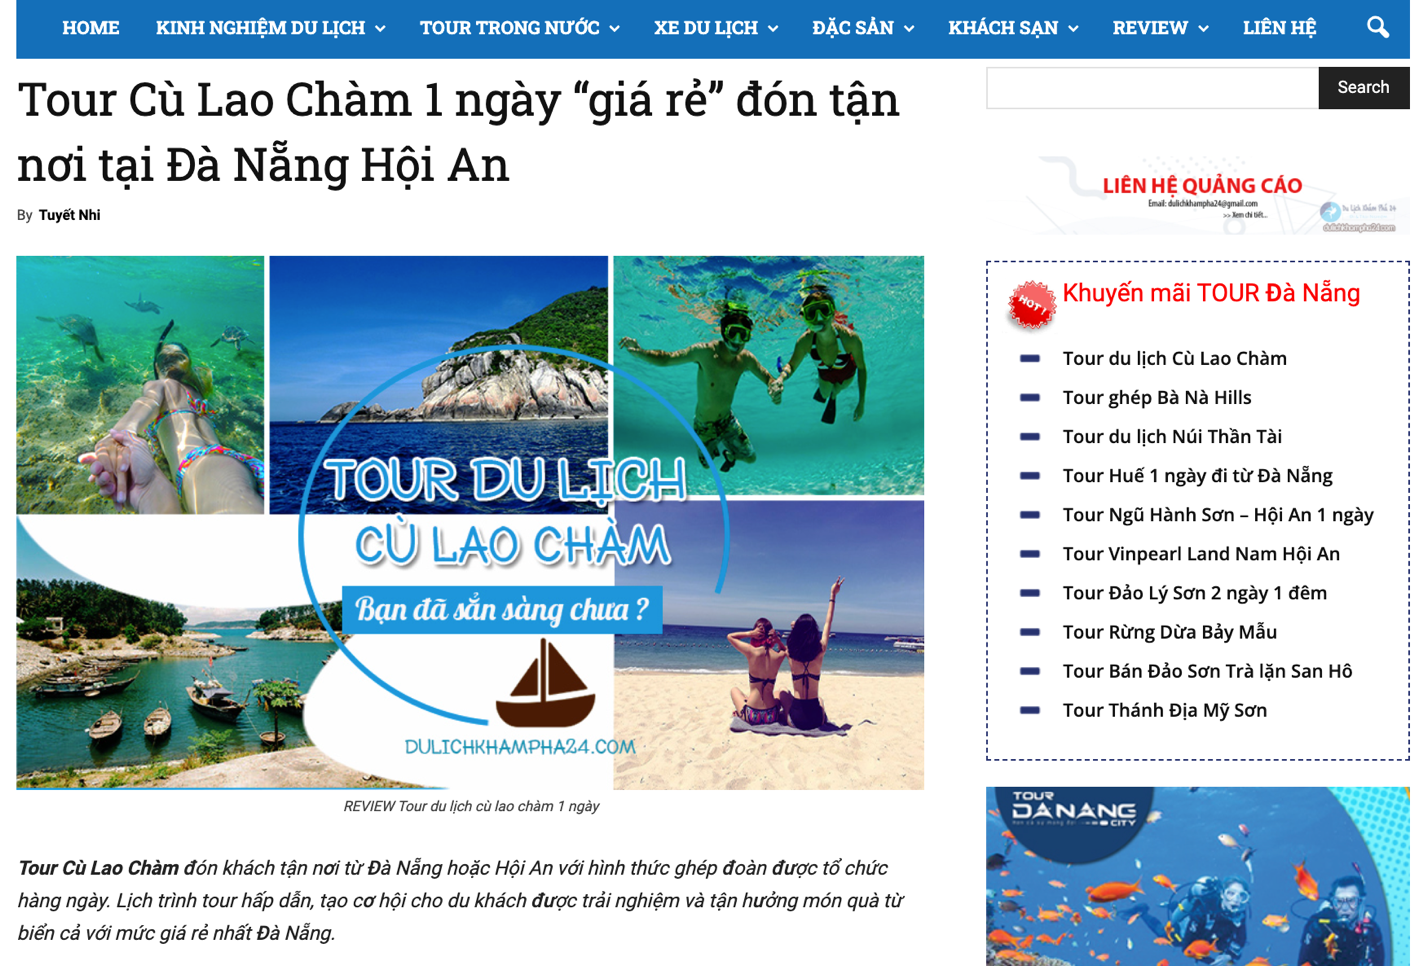 Dulichkhampha24.com cũng gợi ý đơn vị tổ chức tour Cù Lao Chàm uy tín